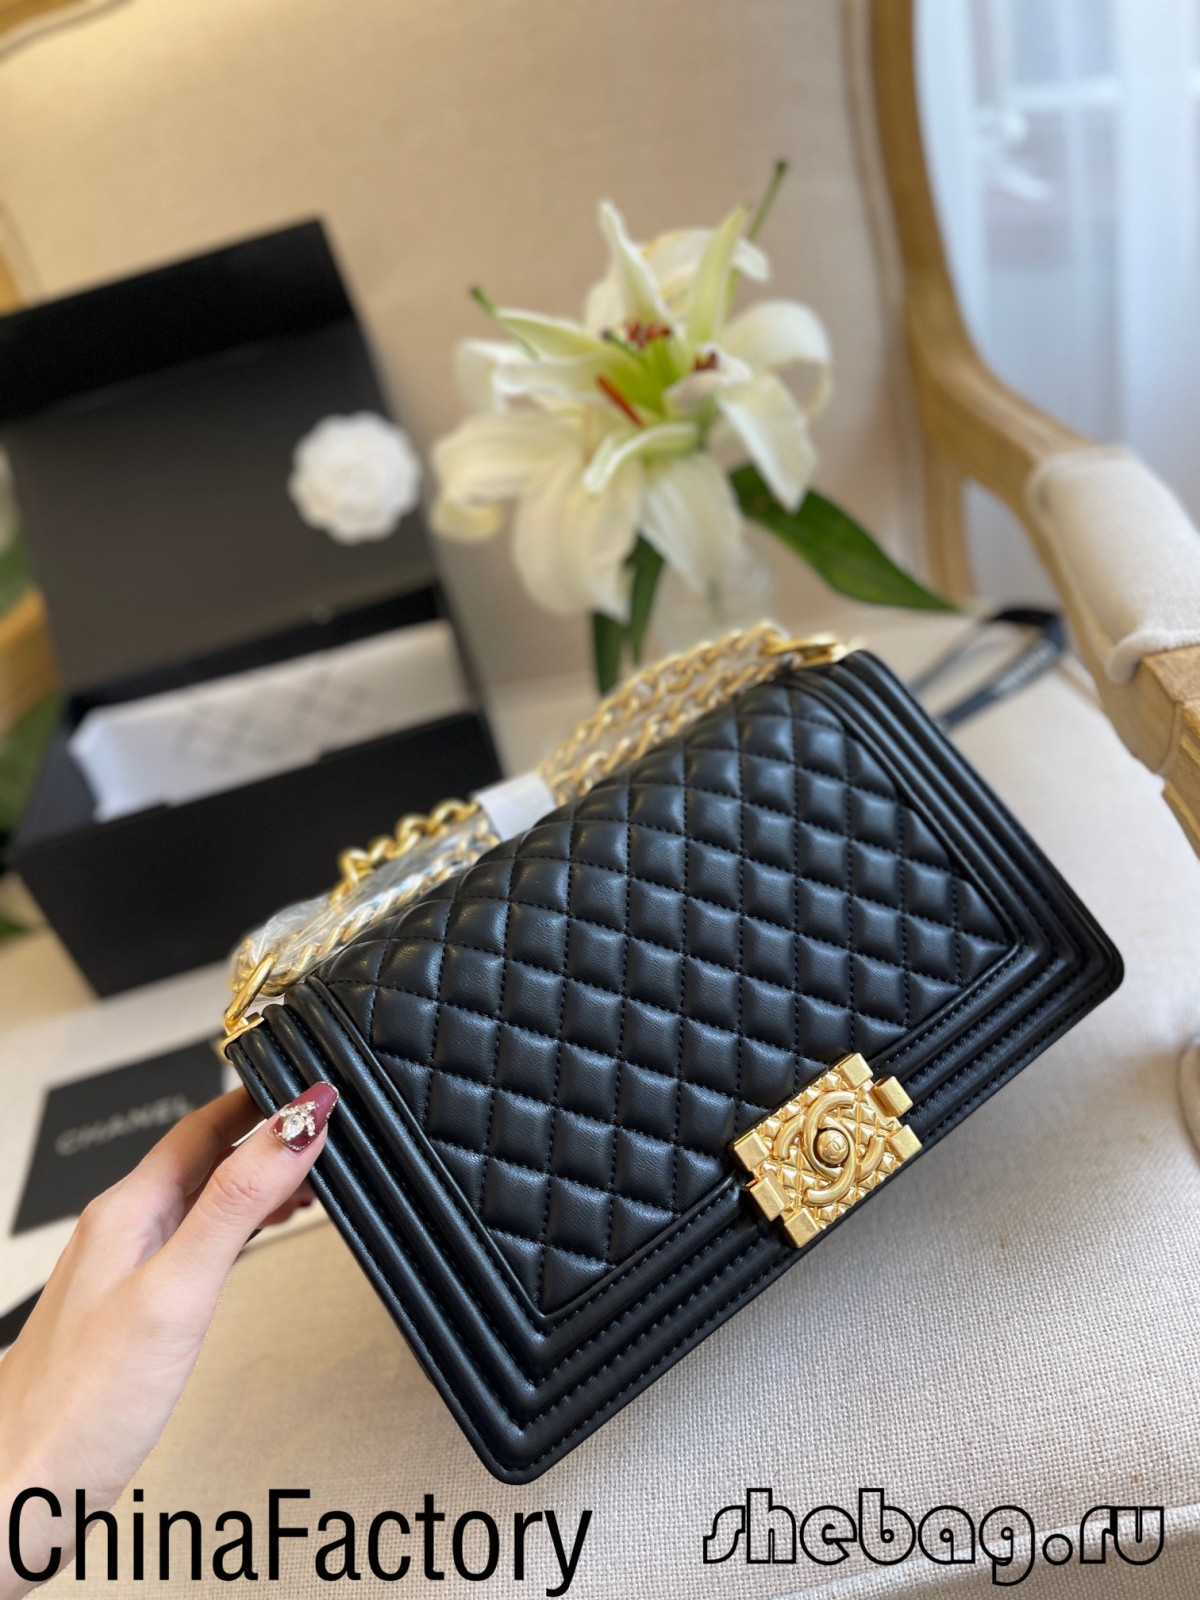 Beste Qualität 2.55 Chanel-Taschenreplikquellen in China (aktualisiert im Jahr 2022) - Online-Shop für gefälschte Louis Vuitton-Taschen in bester Qualität, Replika-Designertasche ru